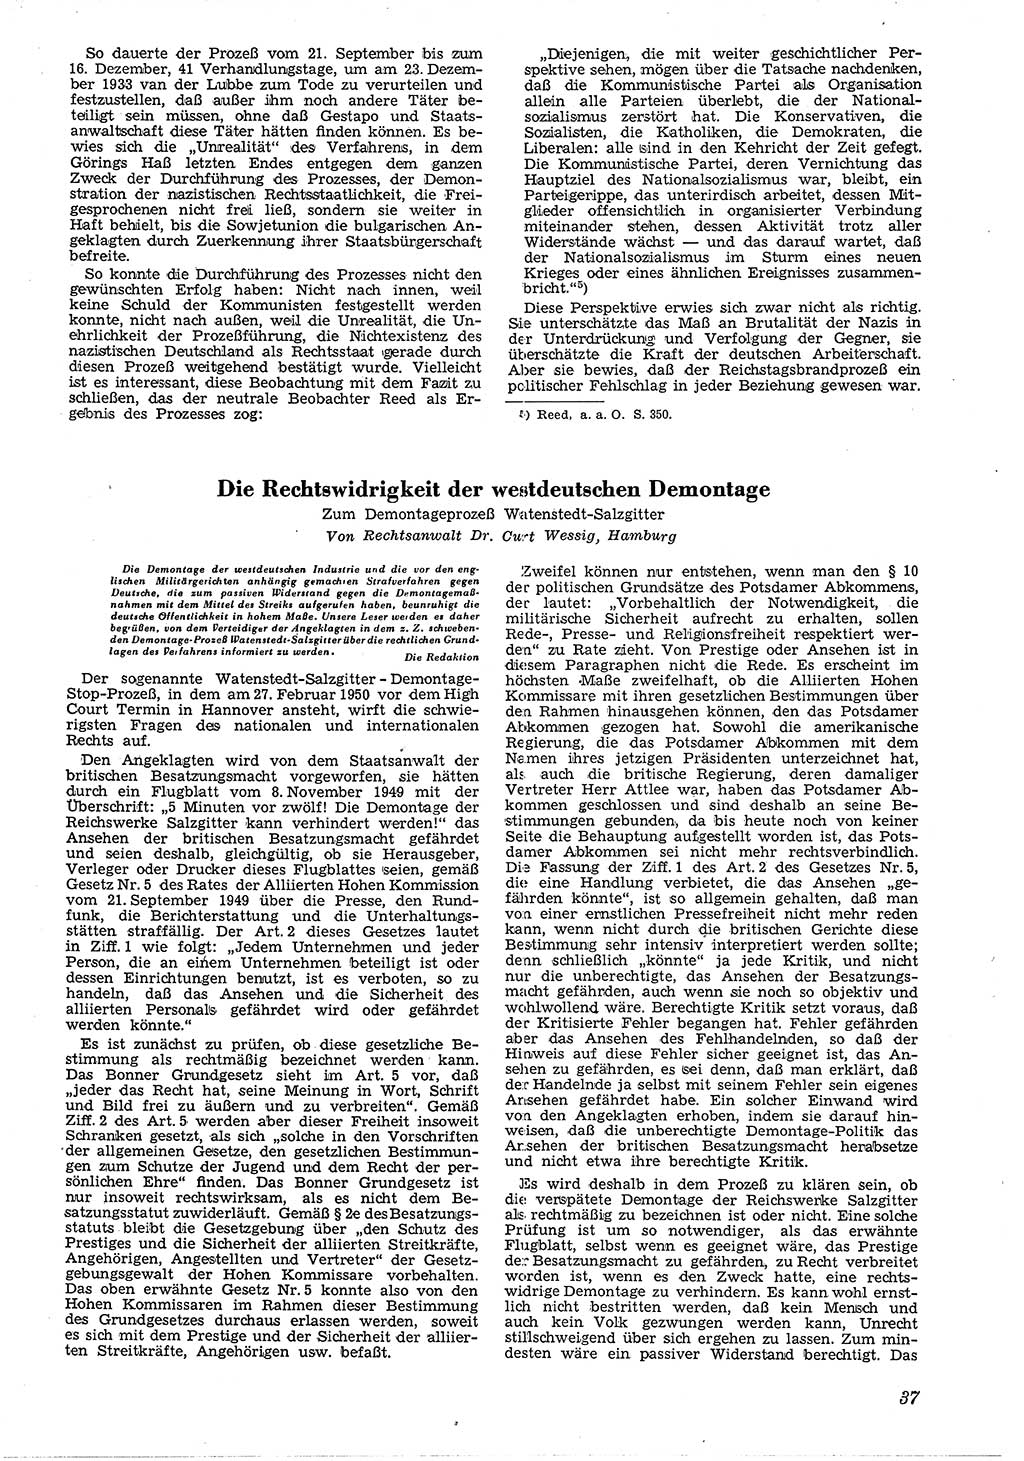 Neue Justiz (NJ), Zeitschrift für Recht und Rechtswissenschaft [Deutsche Demokratische Republik (DDR)], 4. Jahrgang 1950, Seite 37 (NJ DDR 1950, S. 37)